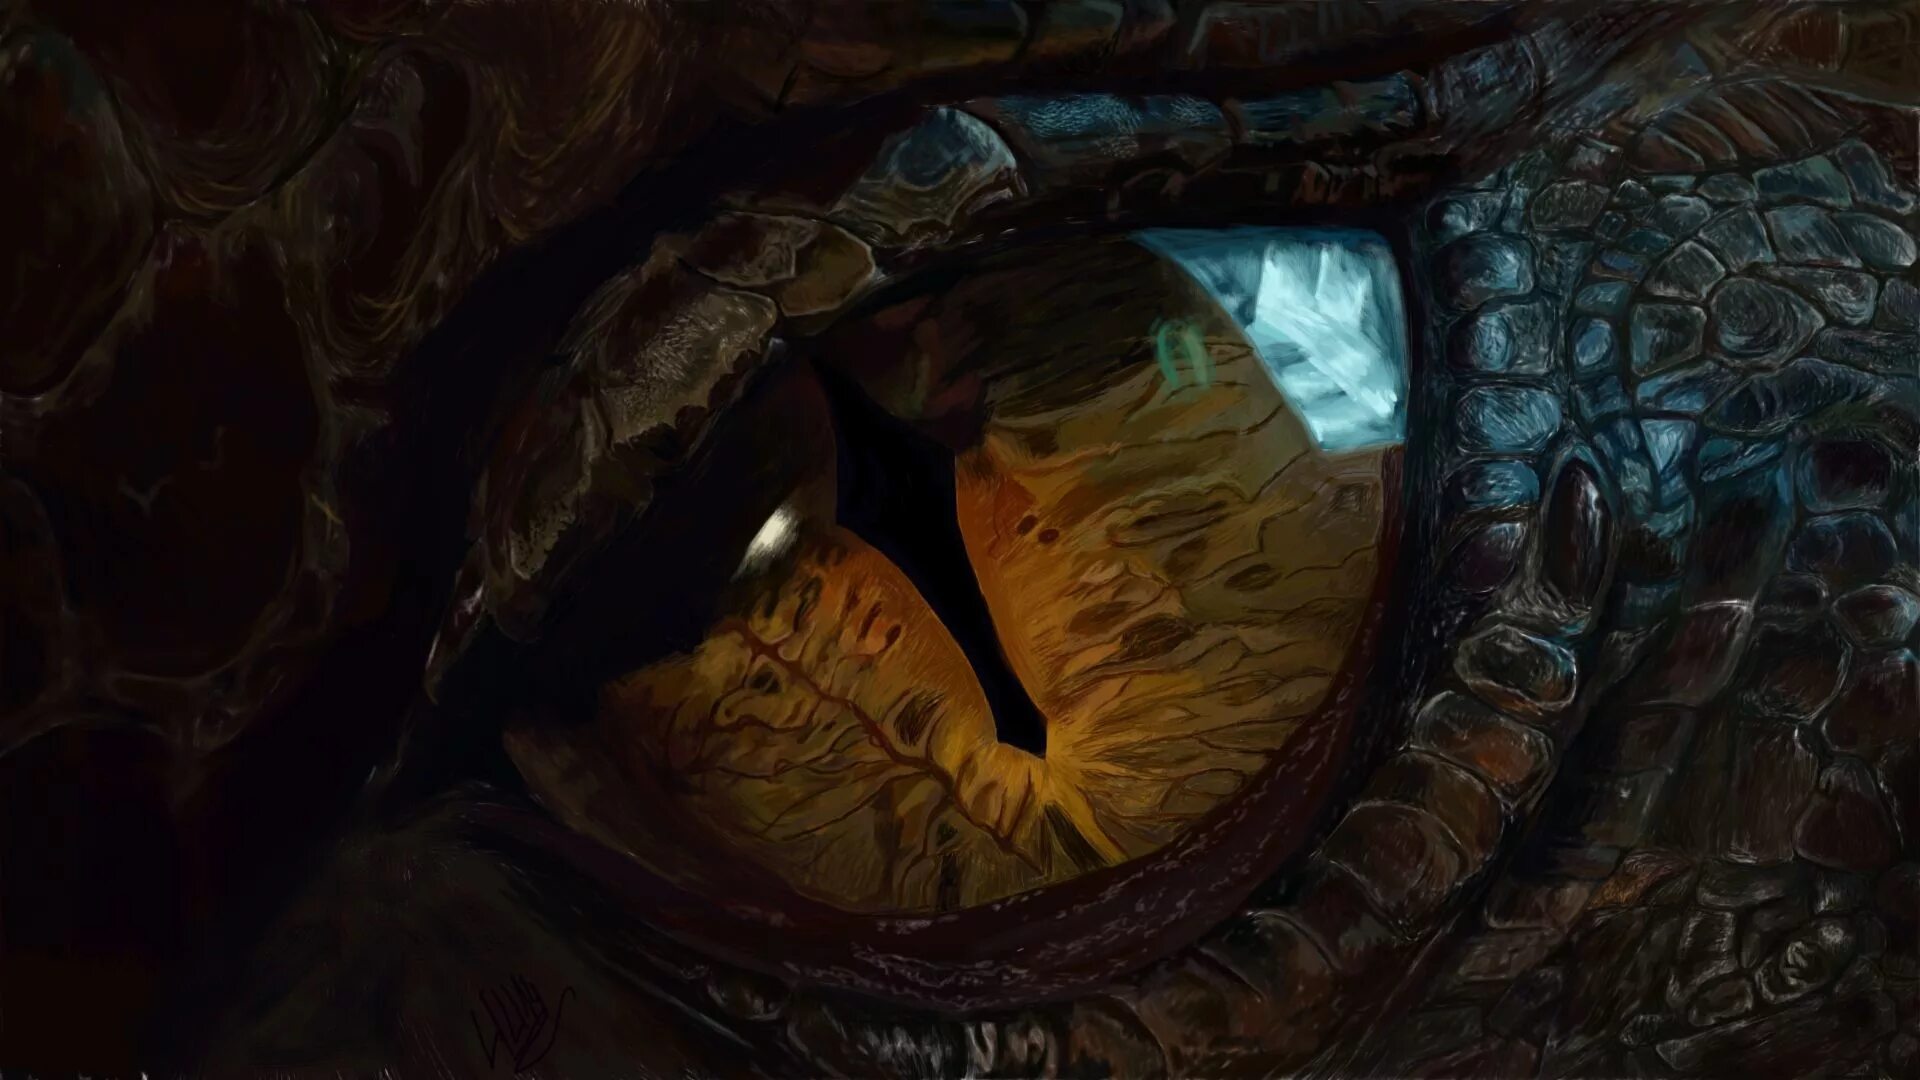 Dragon eye перевод. Хоббит дракон Смауг. Дракон Смауг из Хоббита. Глаз дракона Смауг. Глаз дракона Пустошь Смауга.